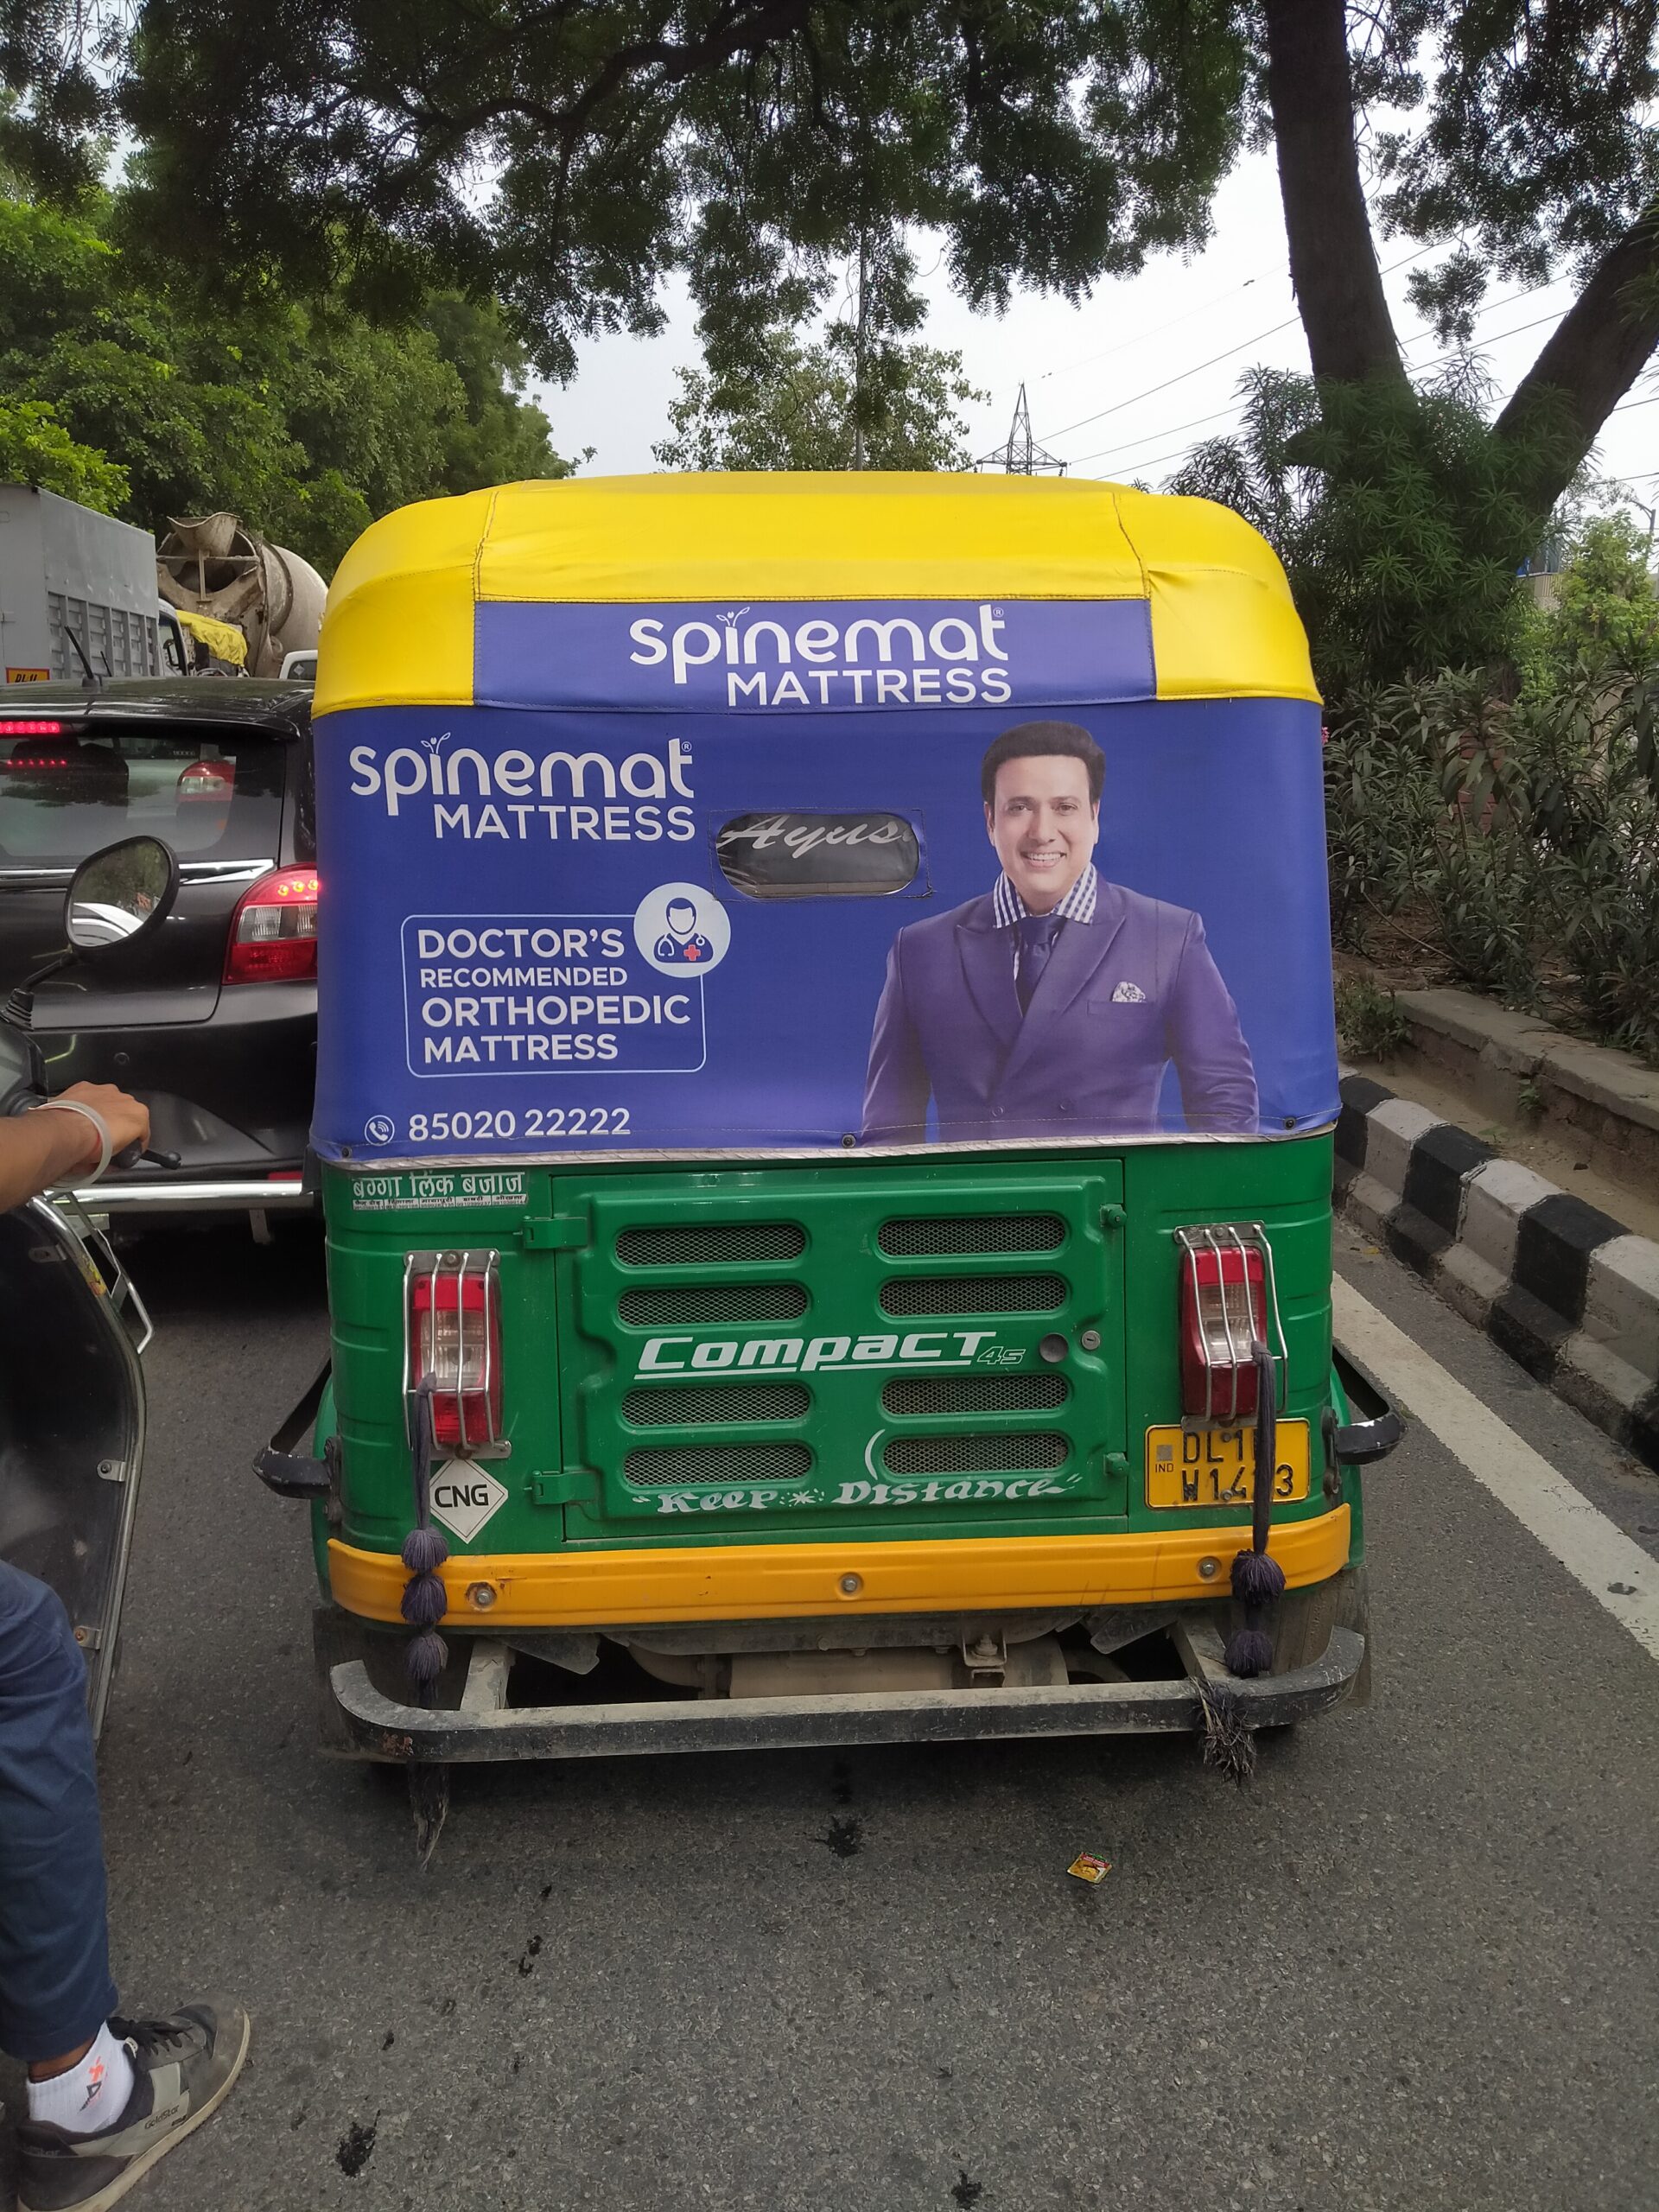 Auto Rickshaw Advertisement in Delhi